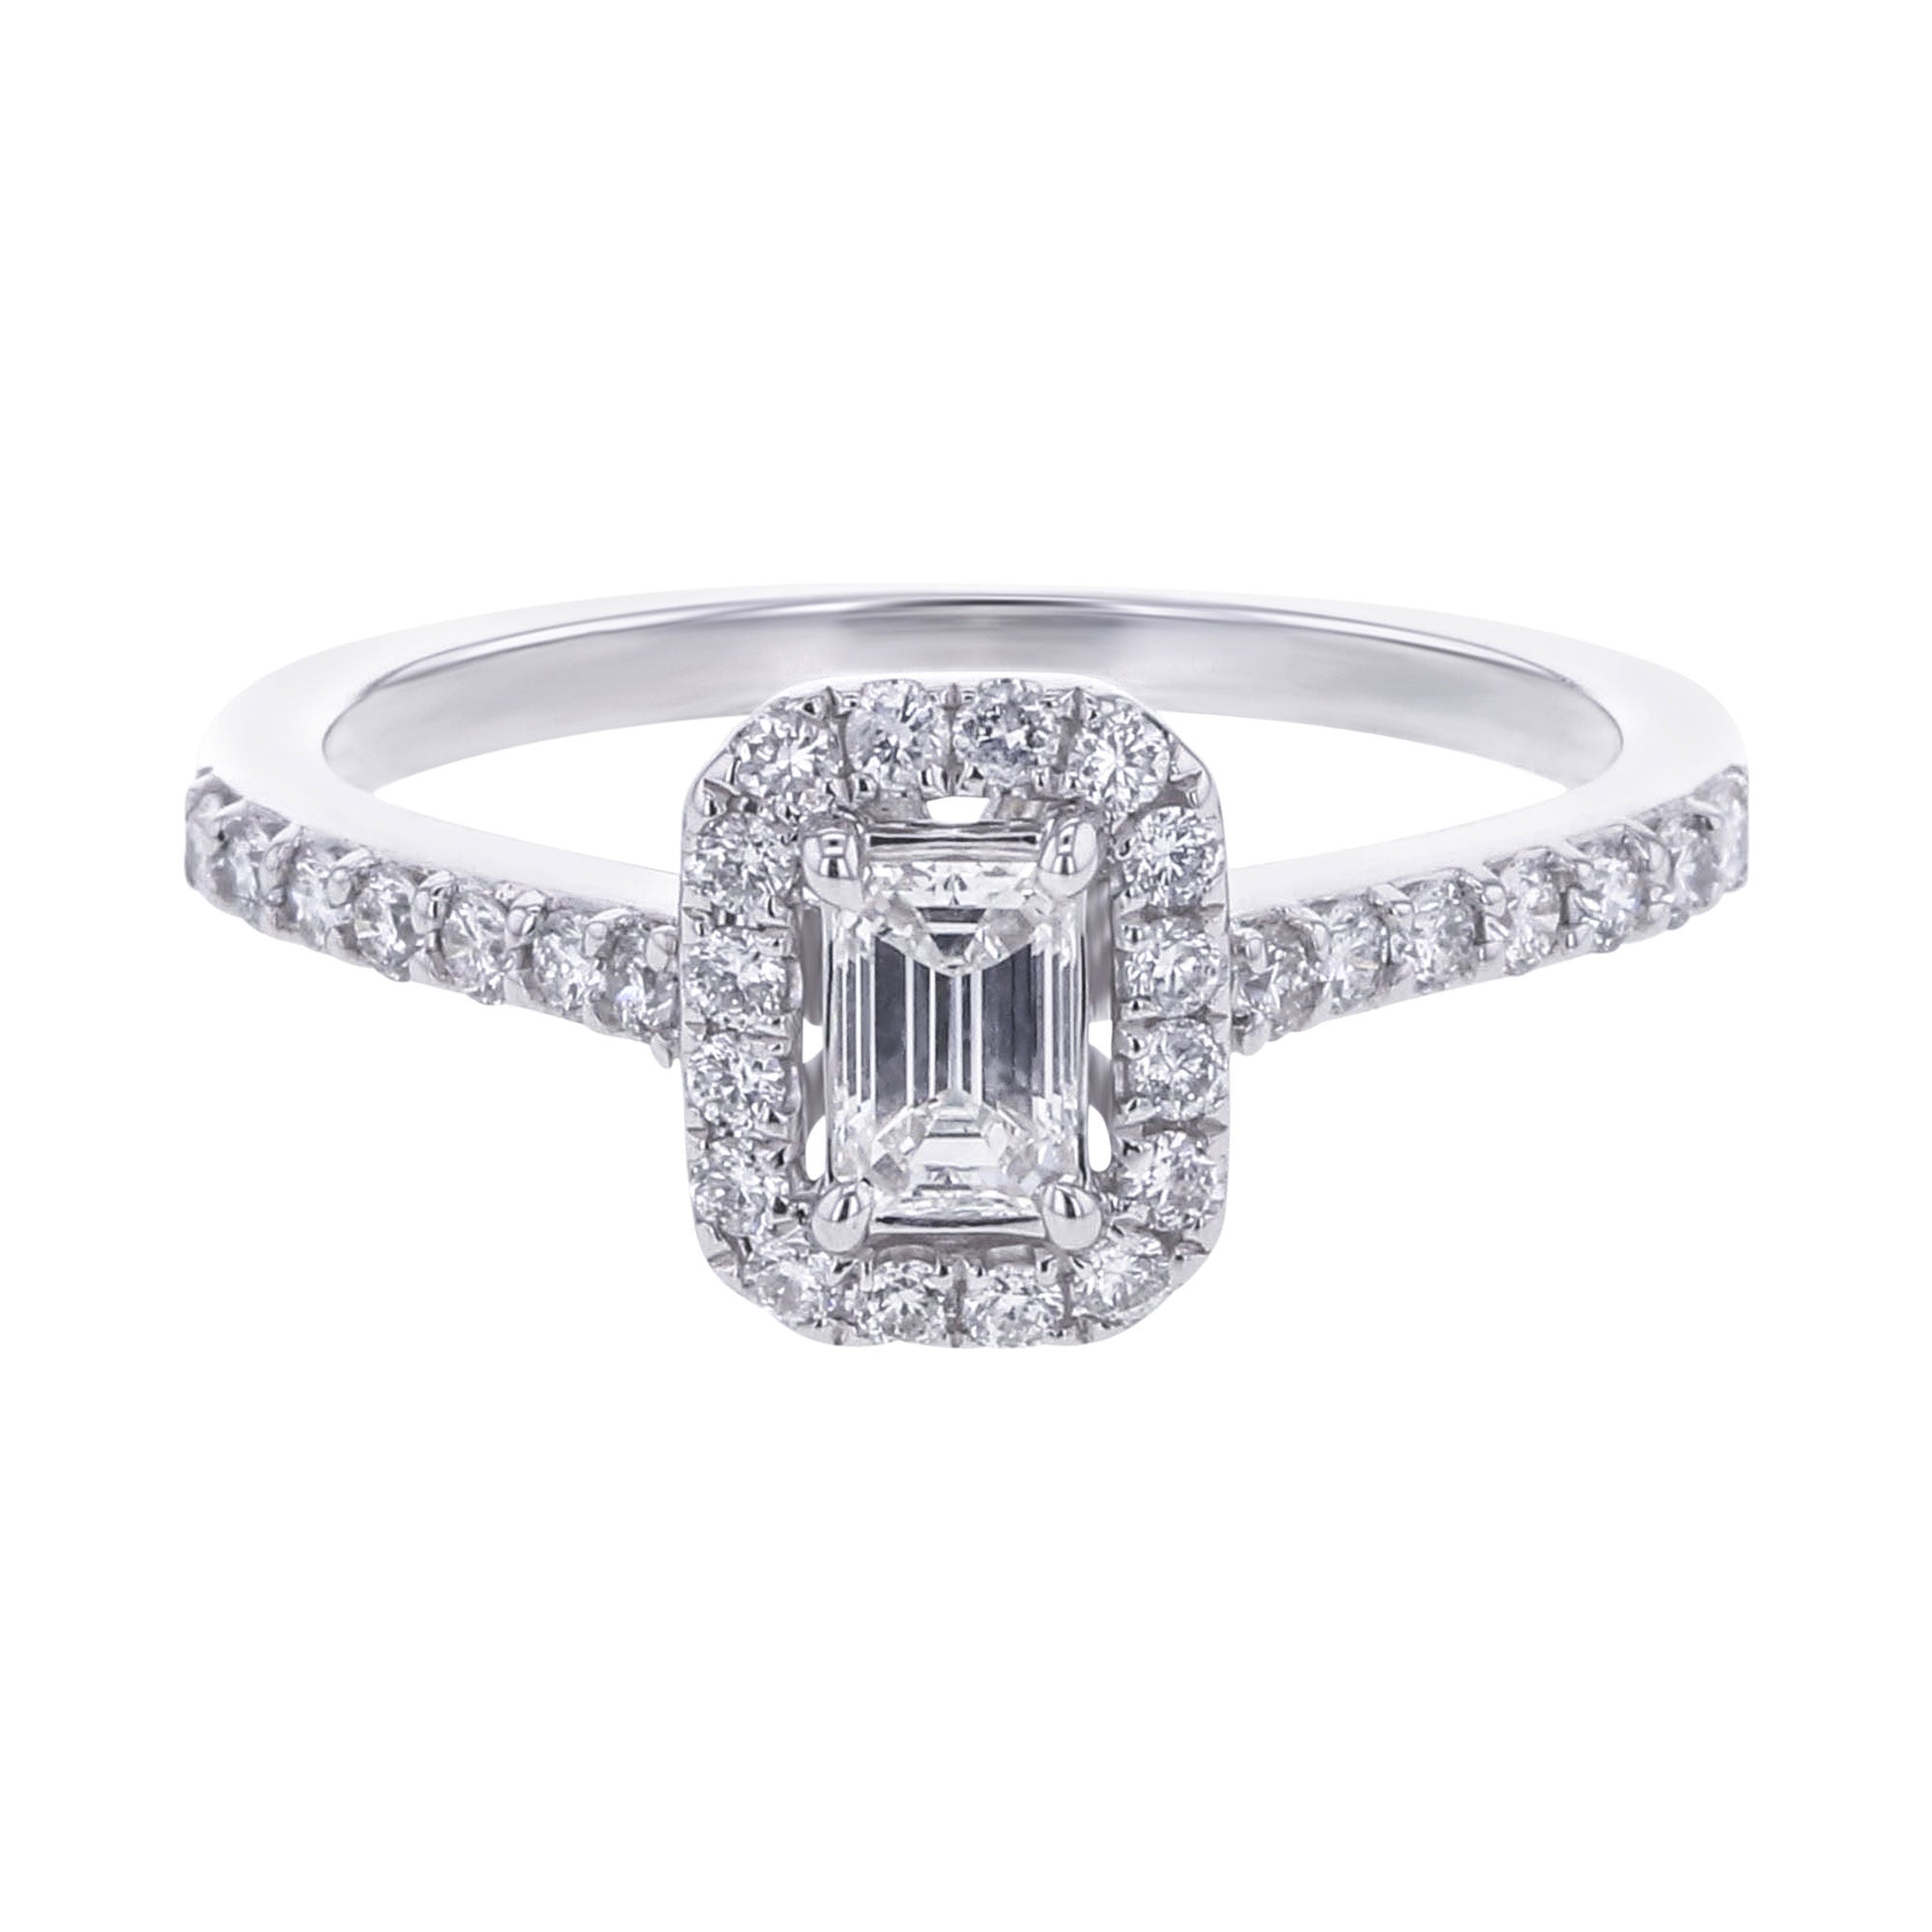 Dakshi Ready for Love Diamond Engagement Ring